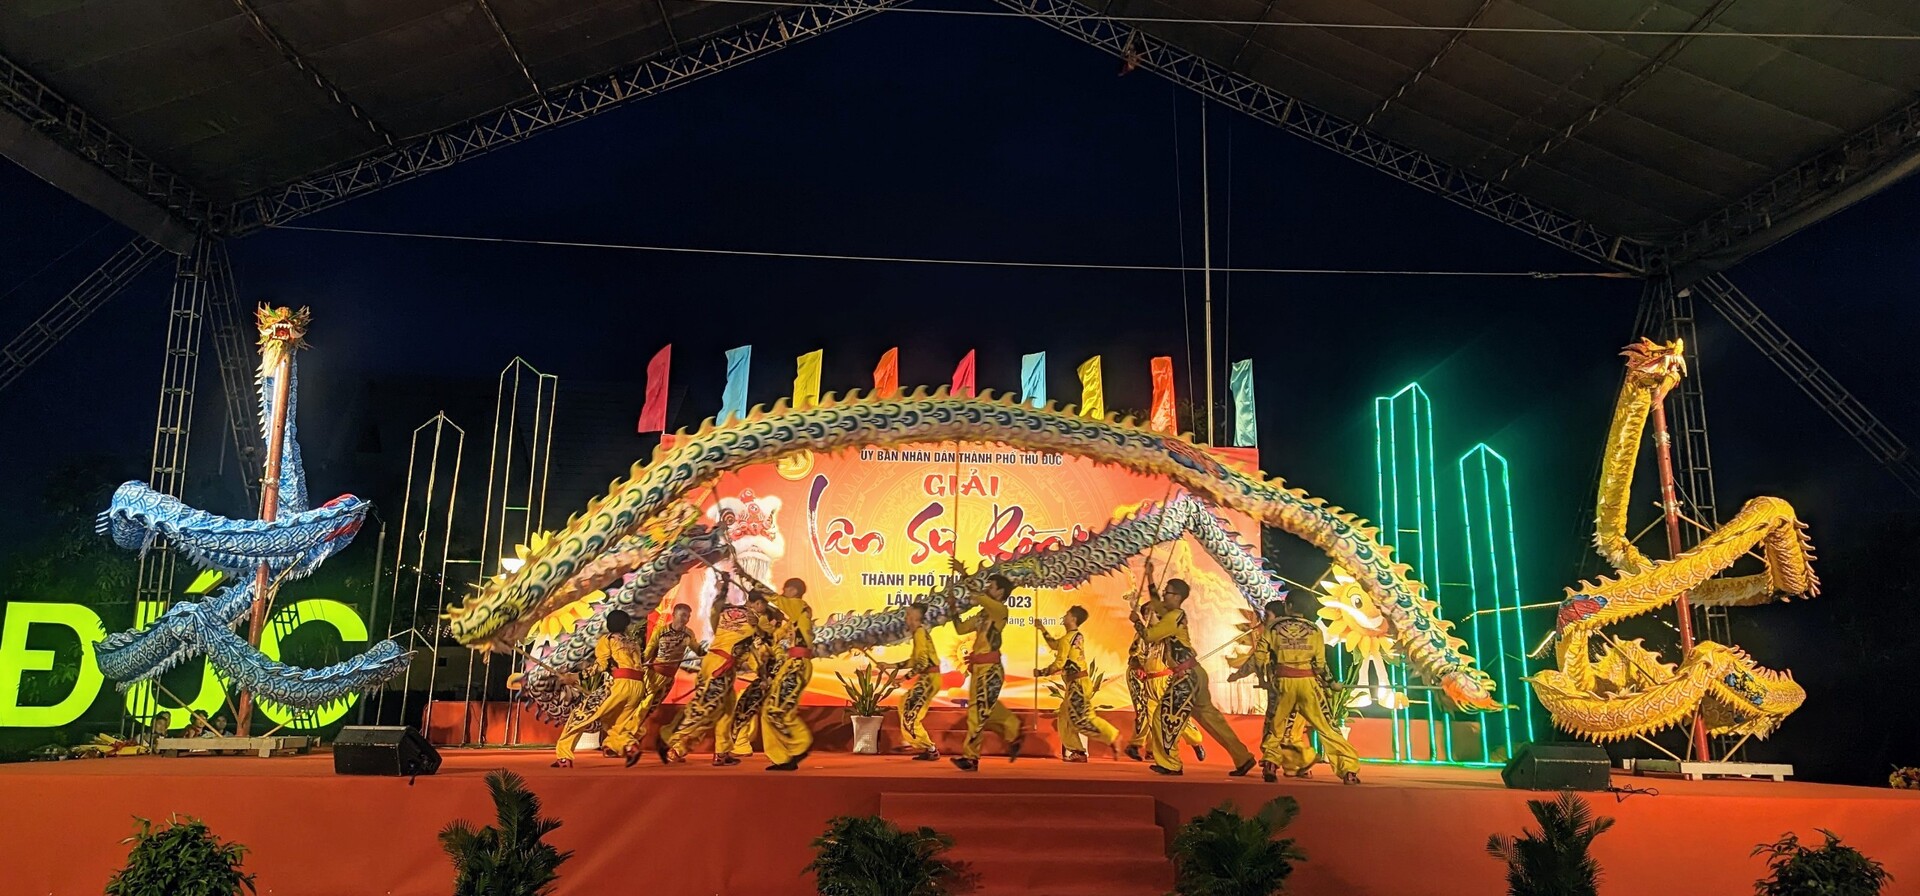 Tiết mục biểu diễn múa rồng tại Lễ khai mạc Giải đấu Lân Sư Rồng thành phố Thủ Đức mở rộng lần thứ I năm 2023